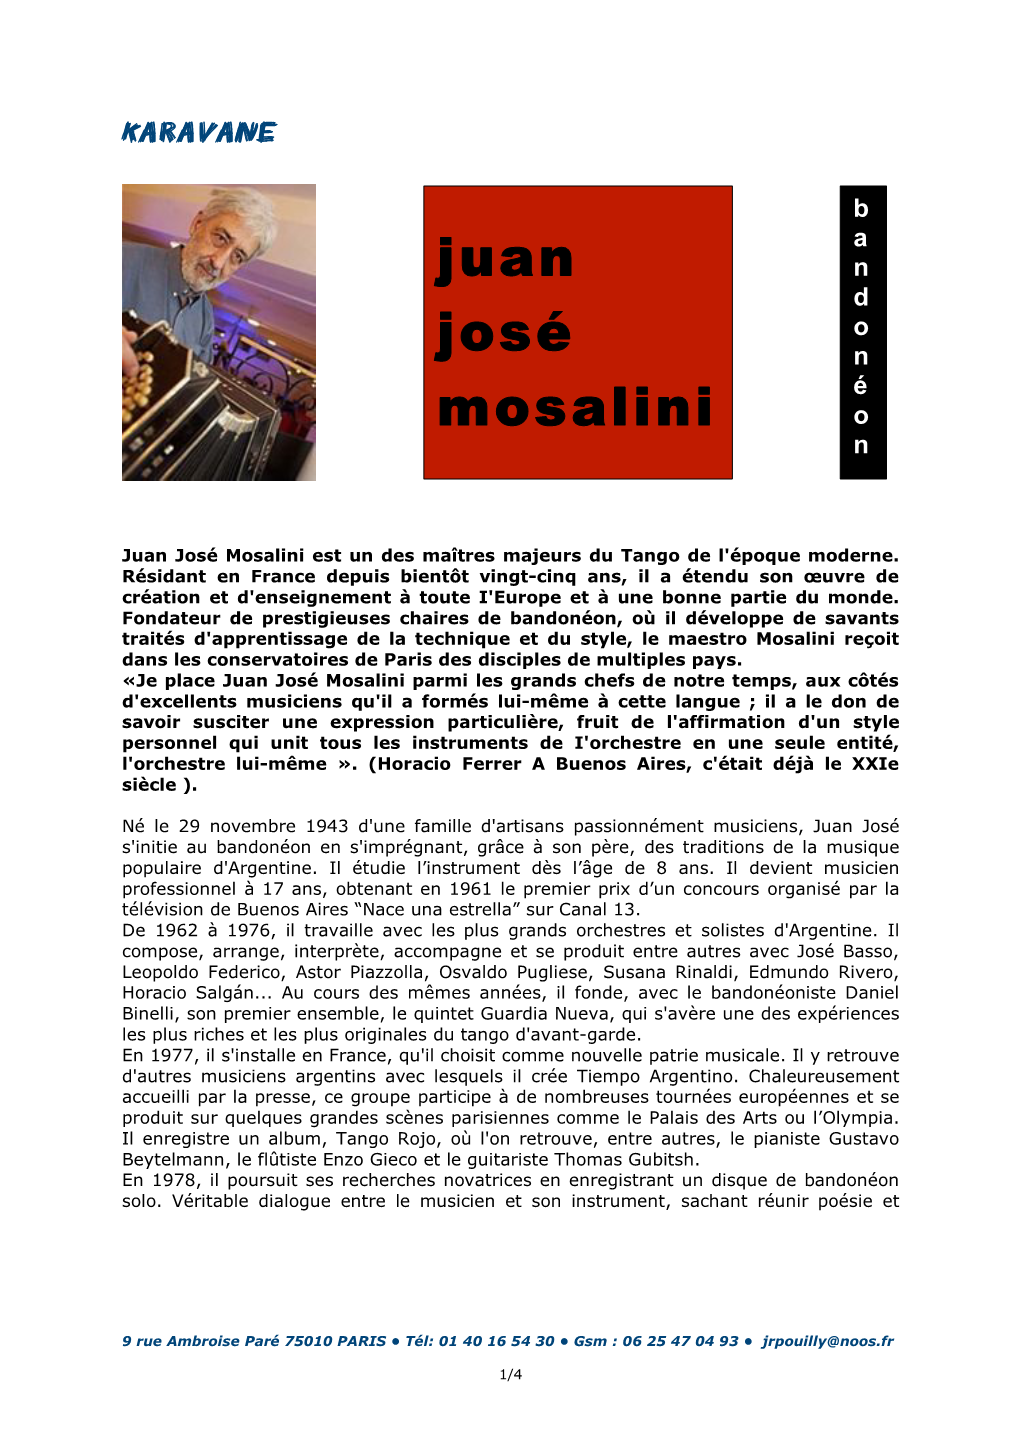 Juan José Mosalini Est Un Des Maîtres Majeurs Du Tango De L'époque Moderne